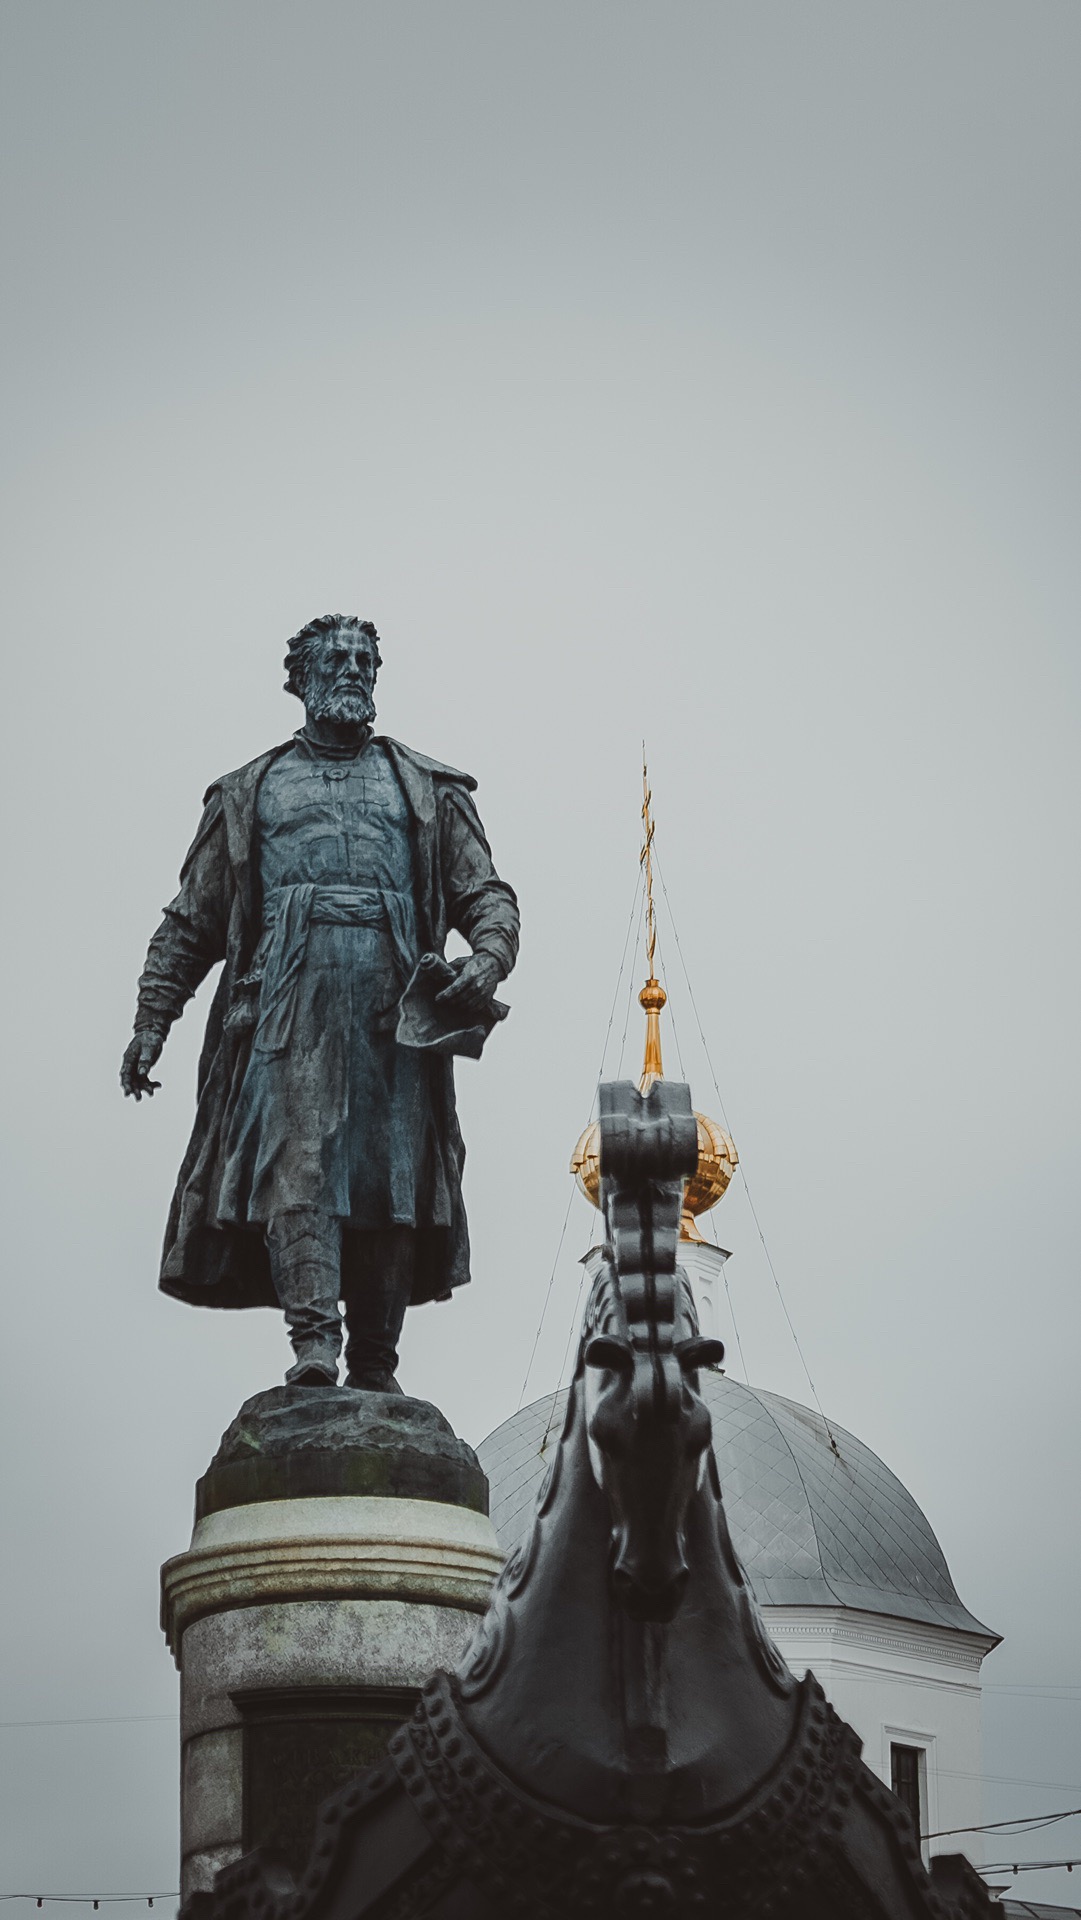 【伏尔加河】 站在伏尔加河面上吹着冷风 不经意想起经历心酸苦楚的纤夫故事 而河边广场的那尊雕像 又何